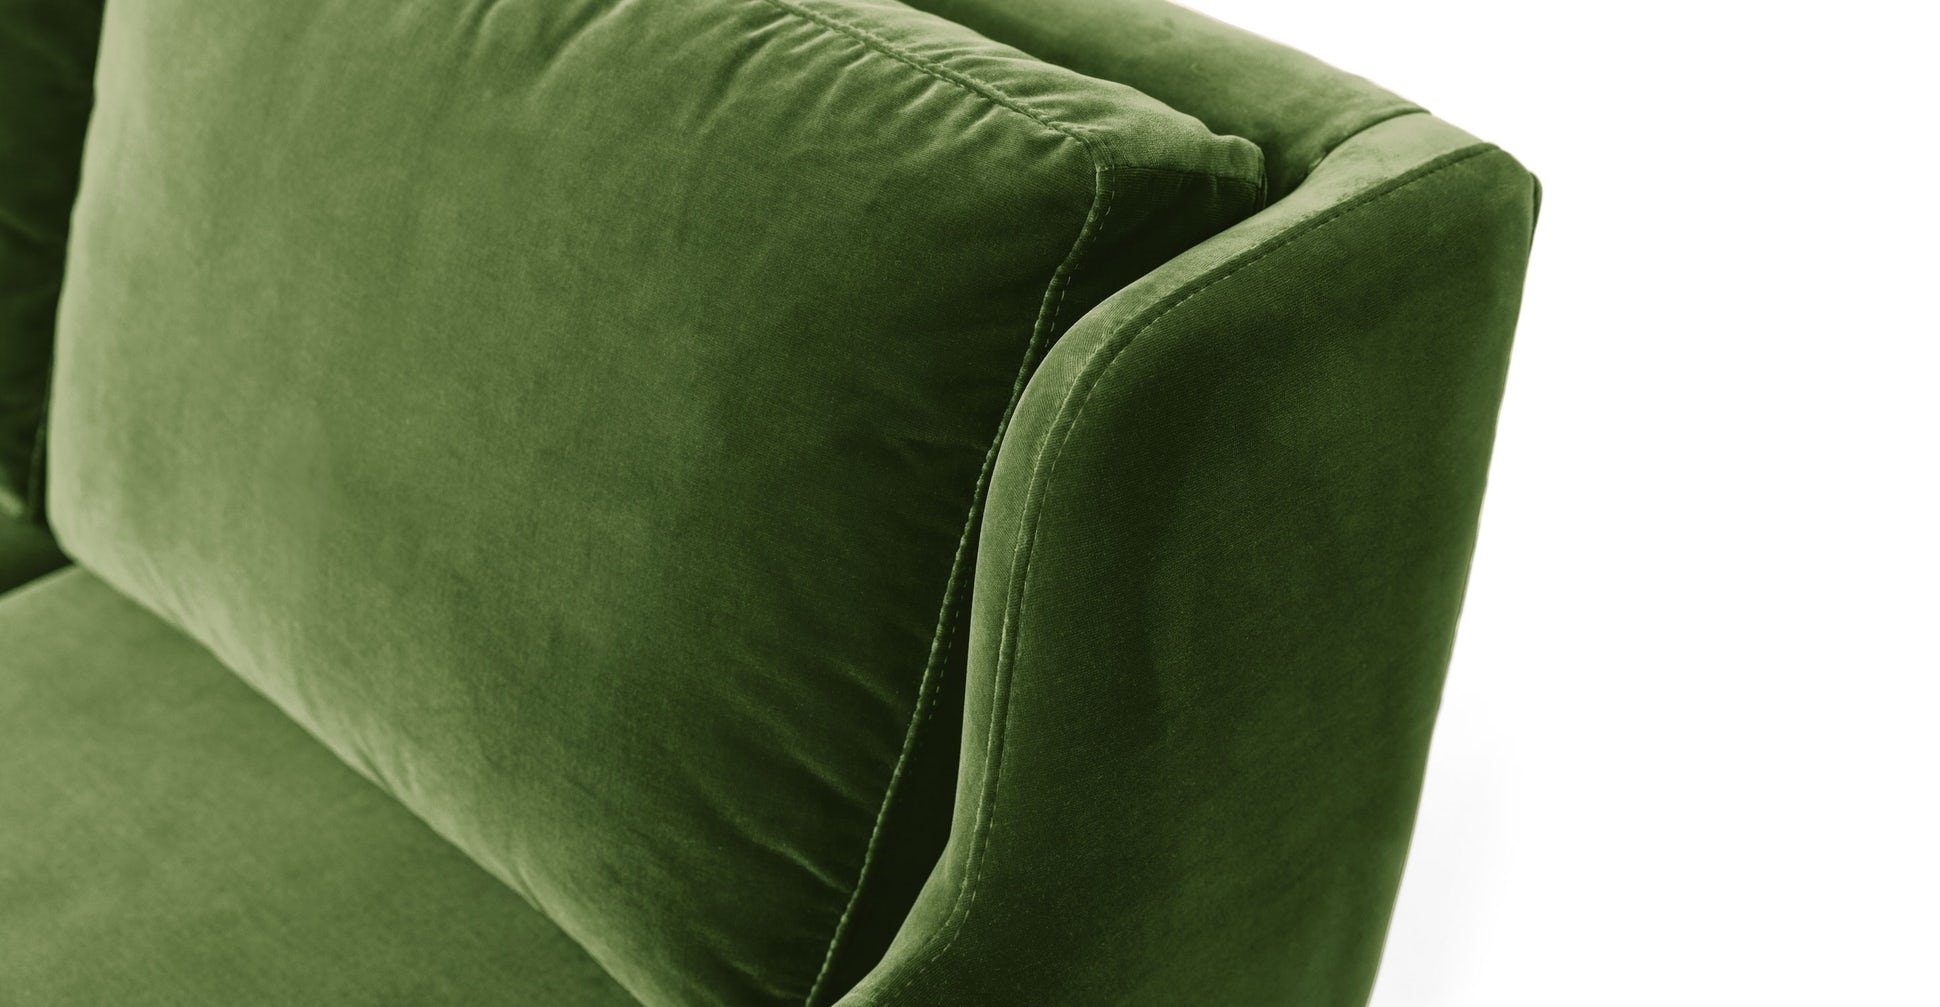 Matrix Grass Green Chair - Image 2